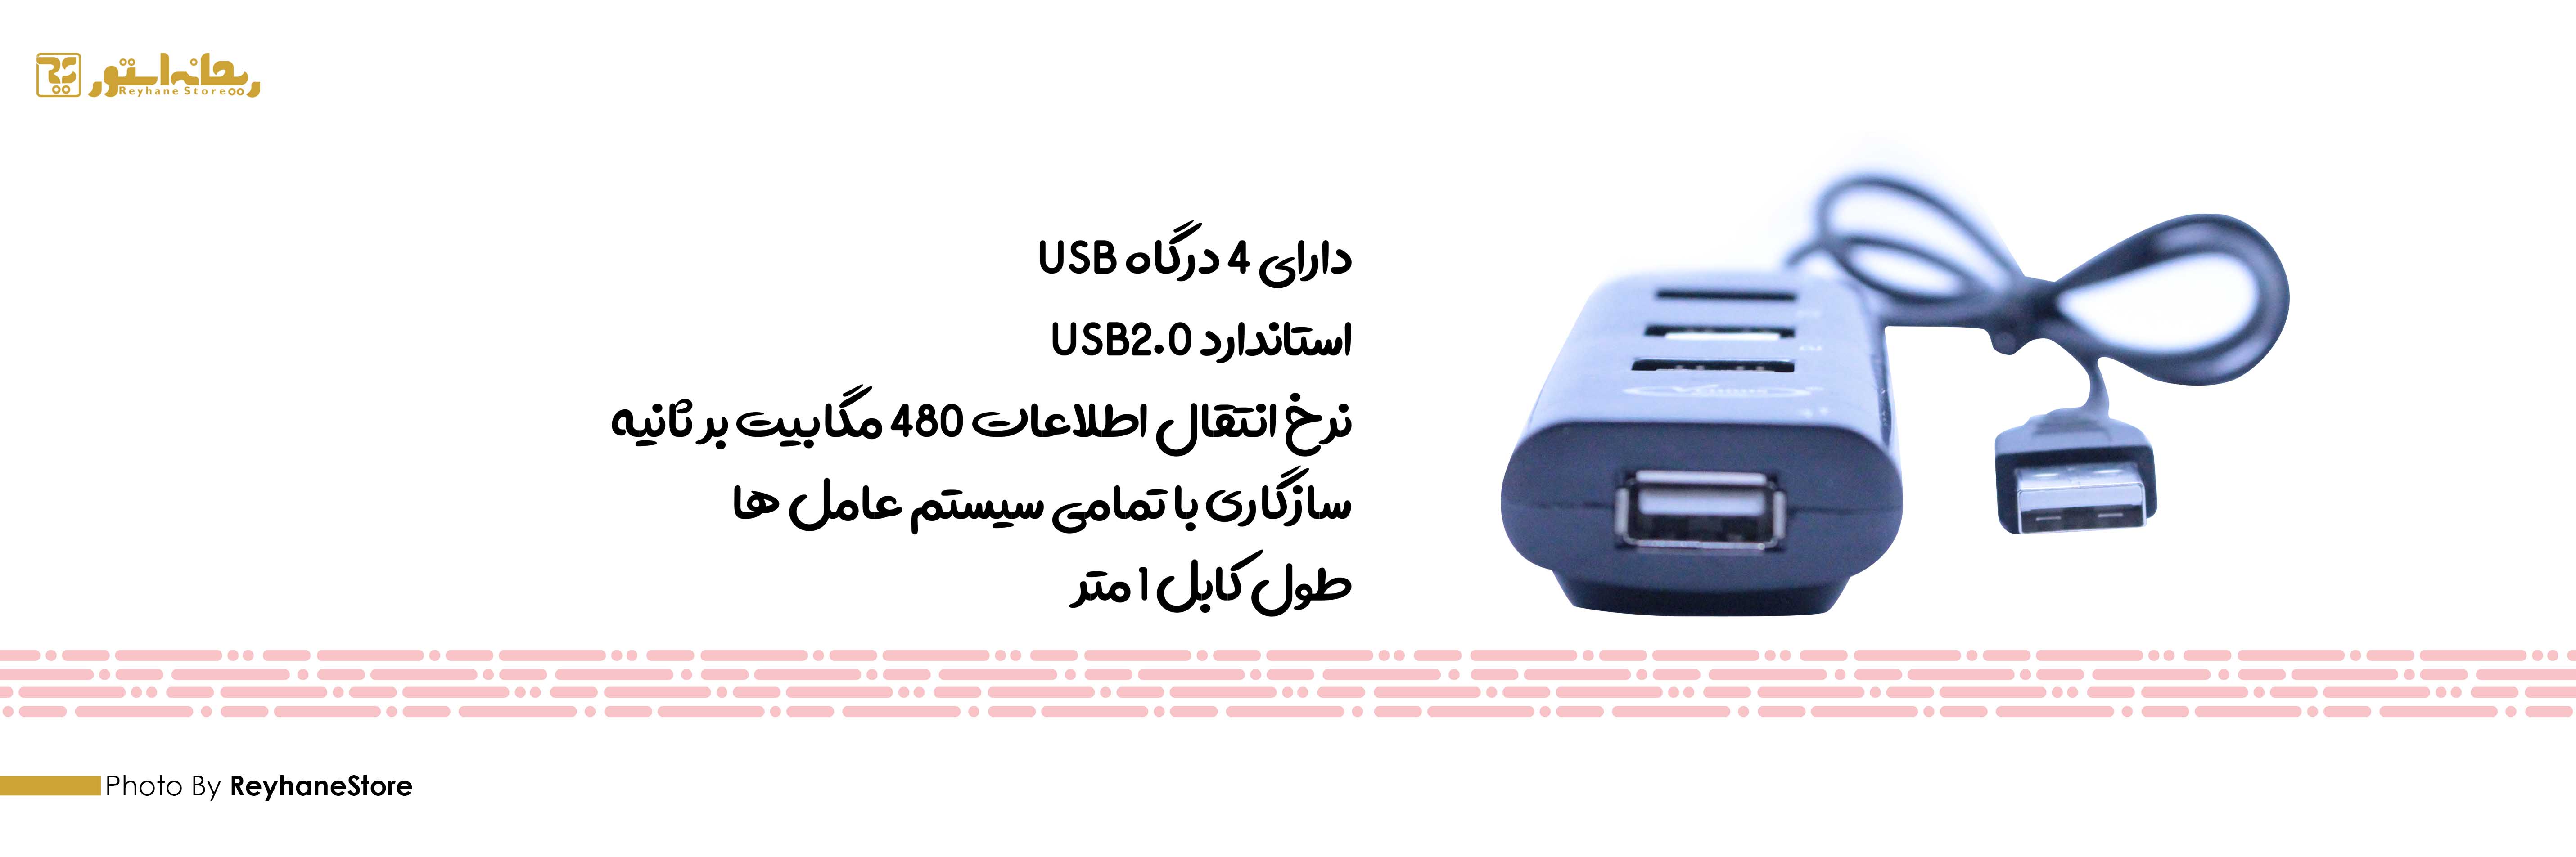 هاب USB ونوس PV-H010